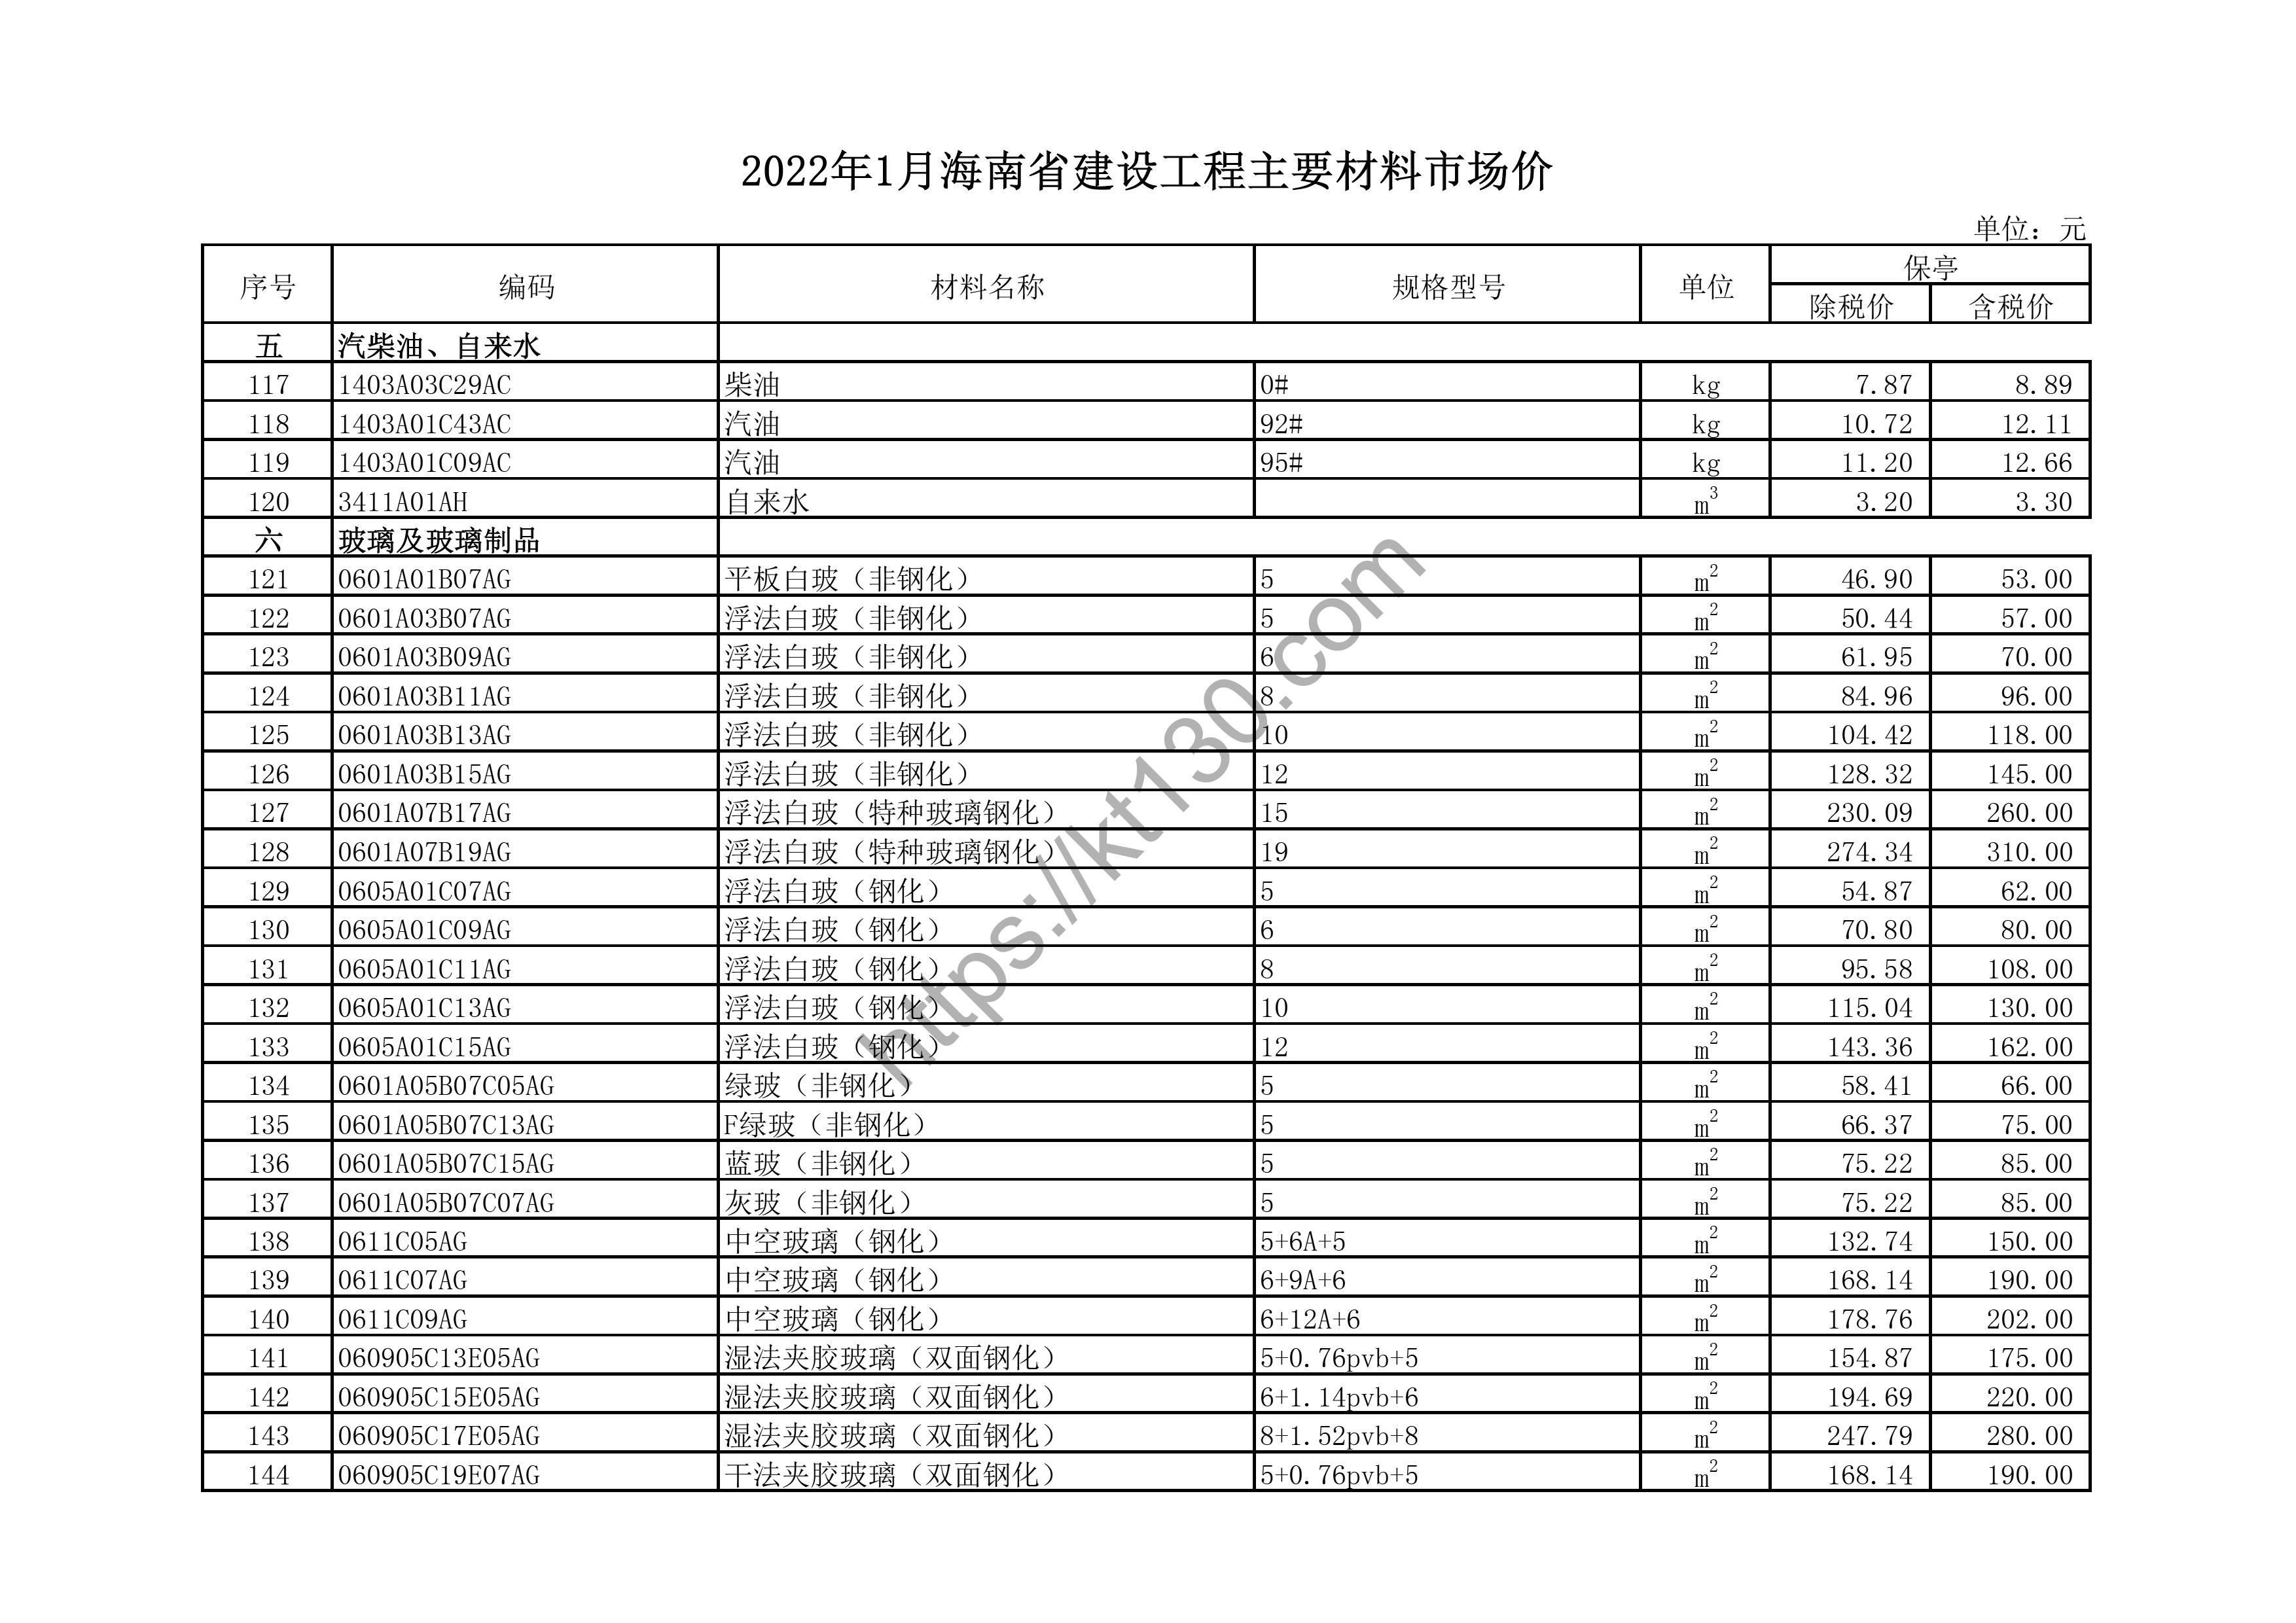 海南省2022年1月建筑材料价_湿法夹胶玻璃_43702